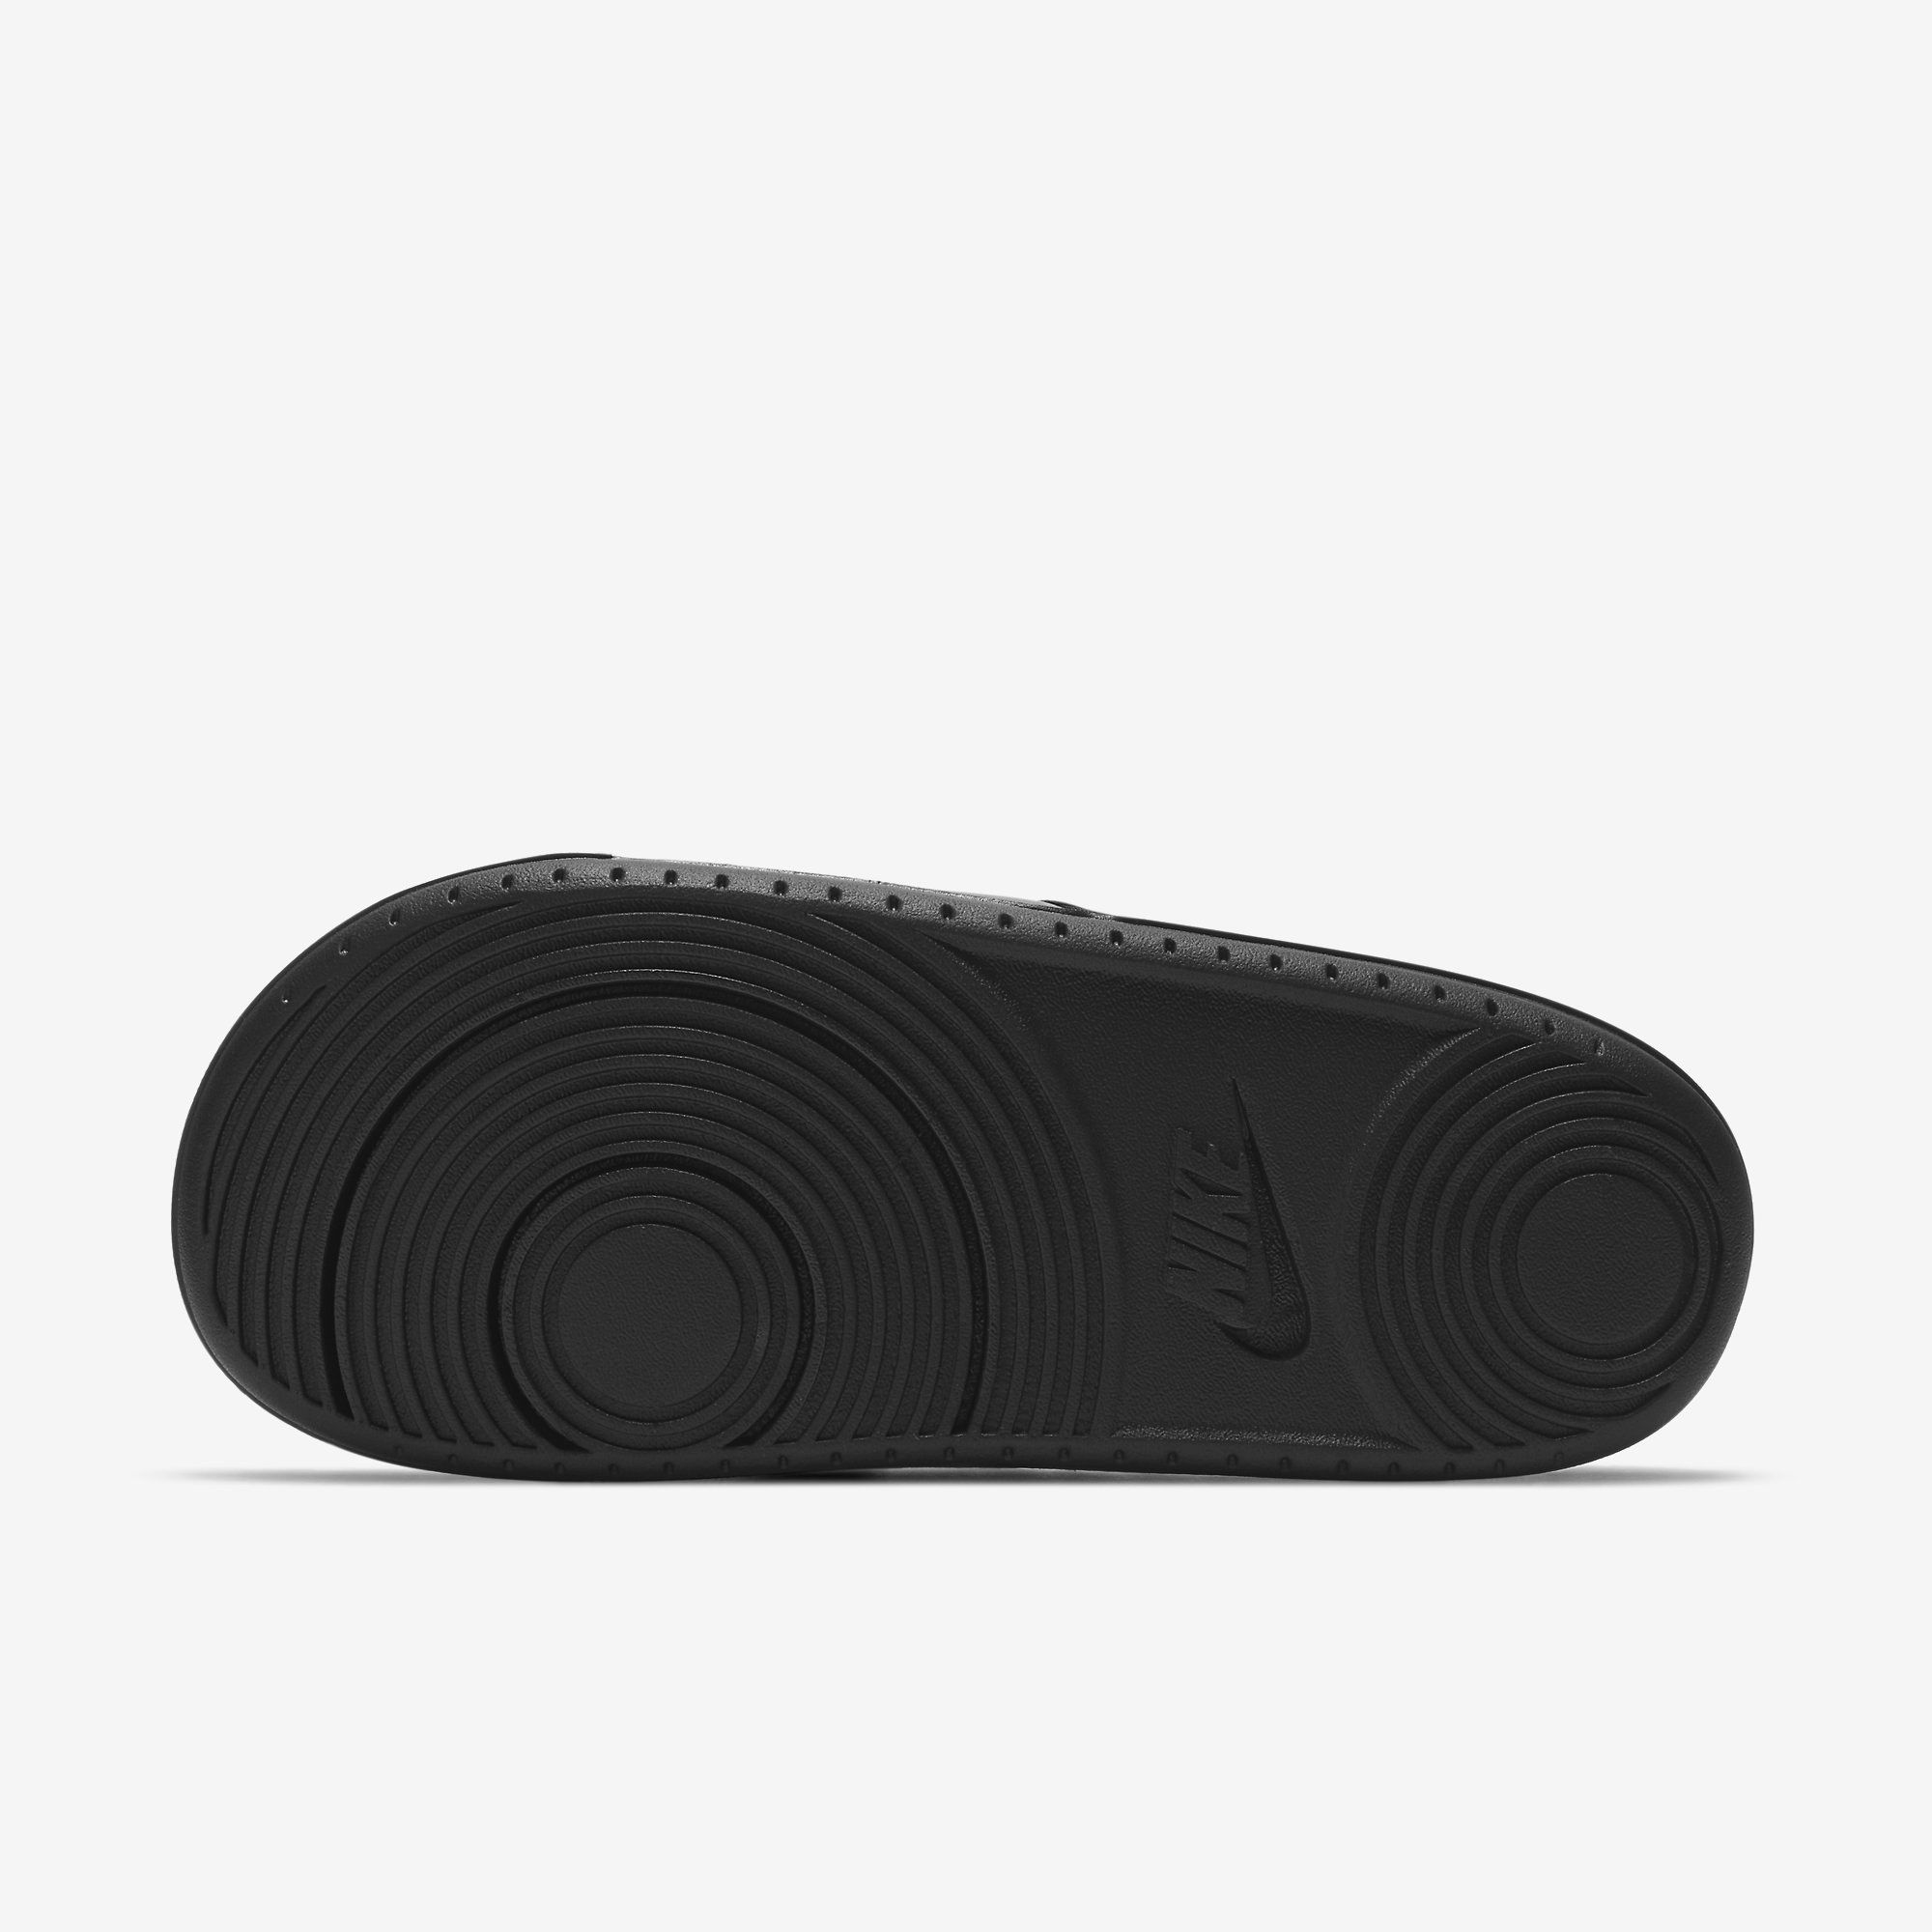  Nike Offcourt Slide - Black / Gold 